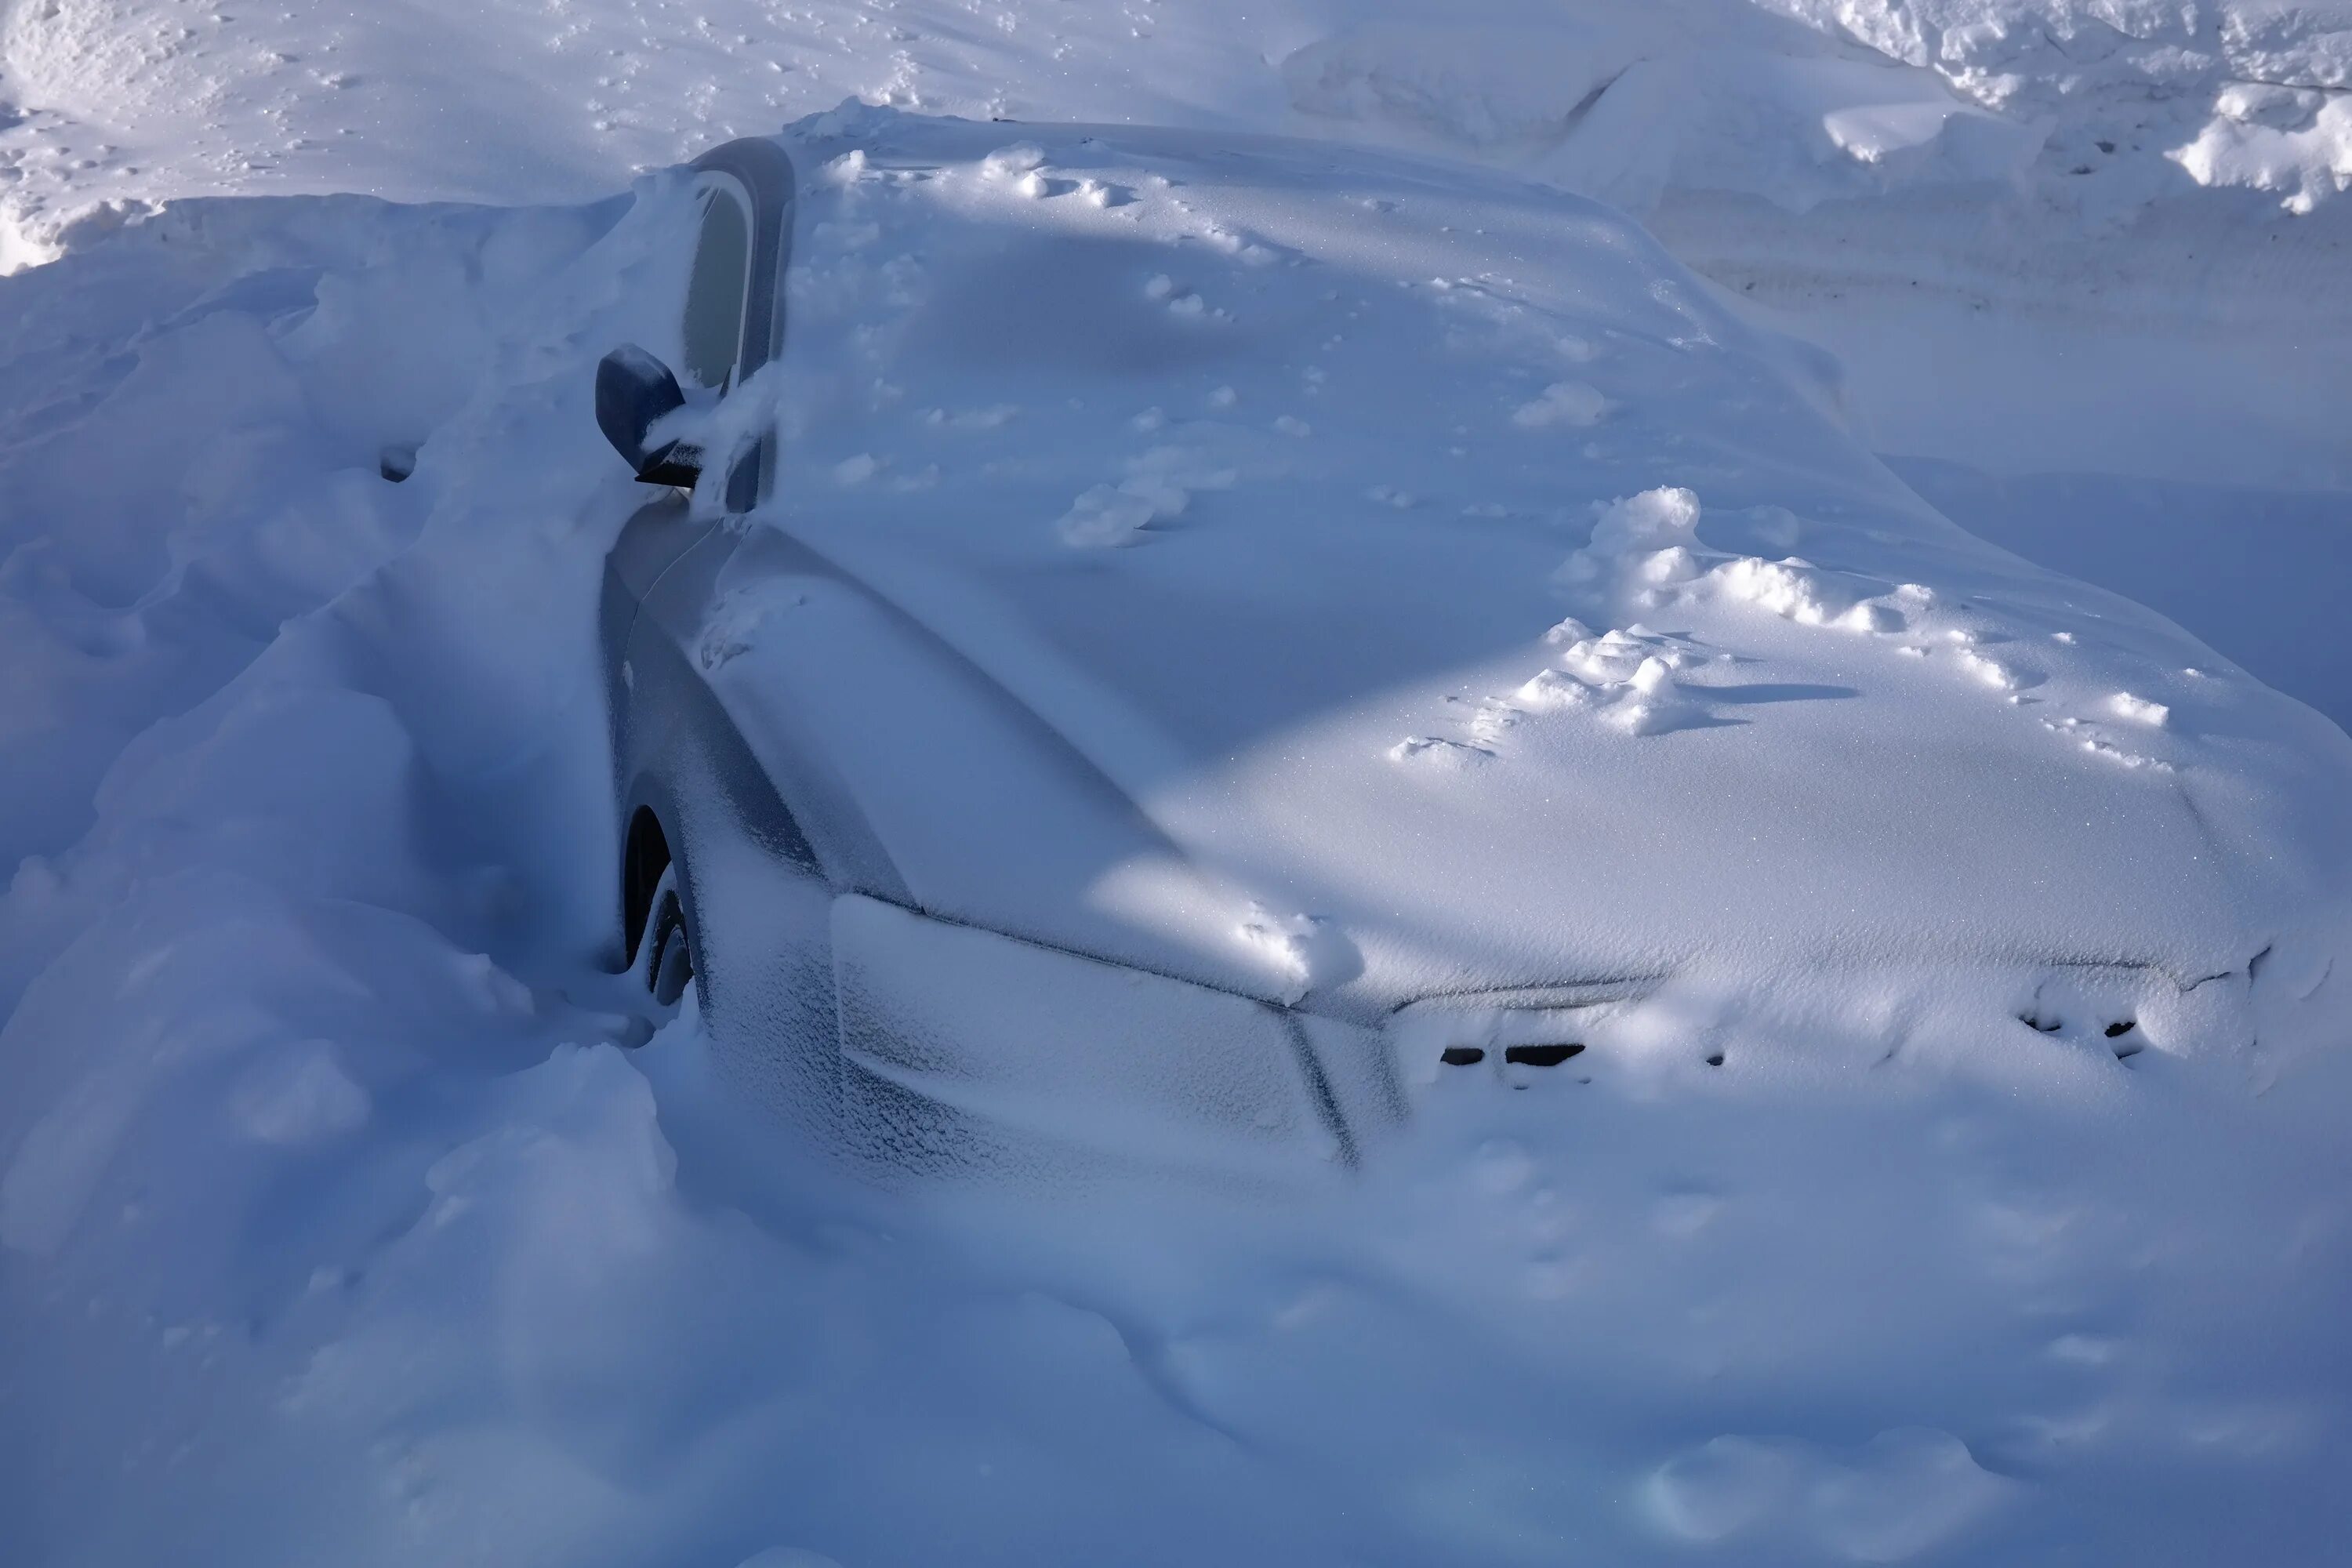 Машина в сугробе. Автомобиль в снегу. Машина под сугробом. Машина занесенная снегом. Машина снежка